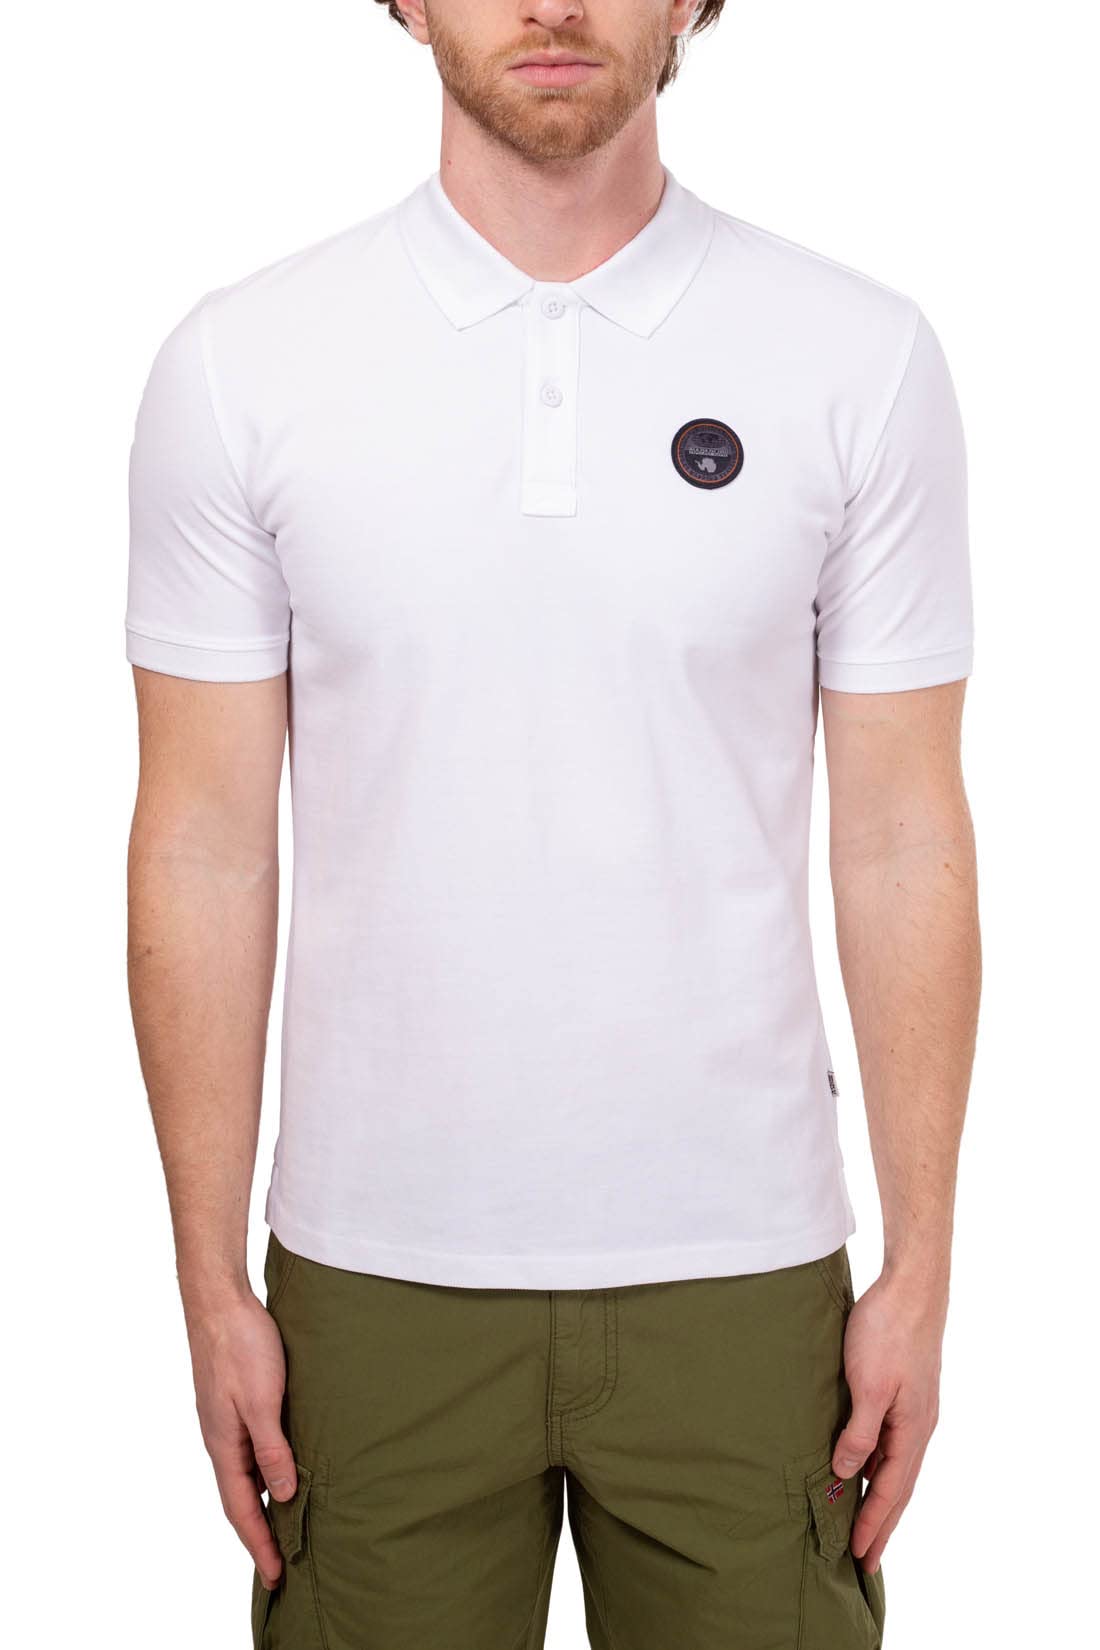 NAPAPIJRI - Men's Logo Patch Polo Shirt - Size